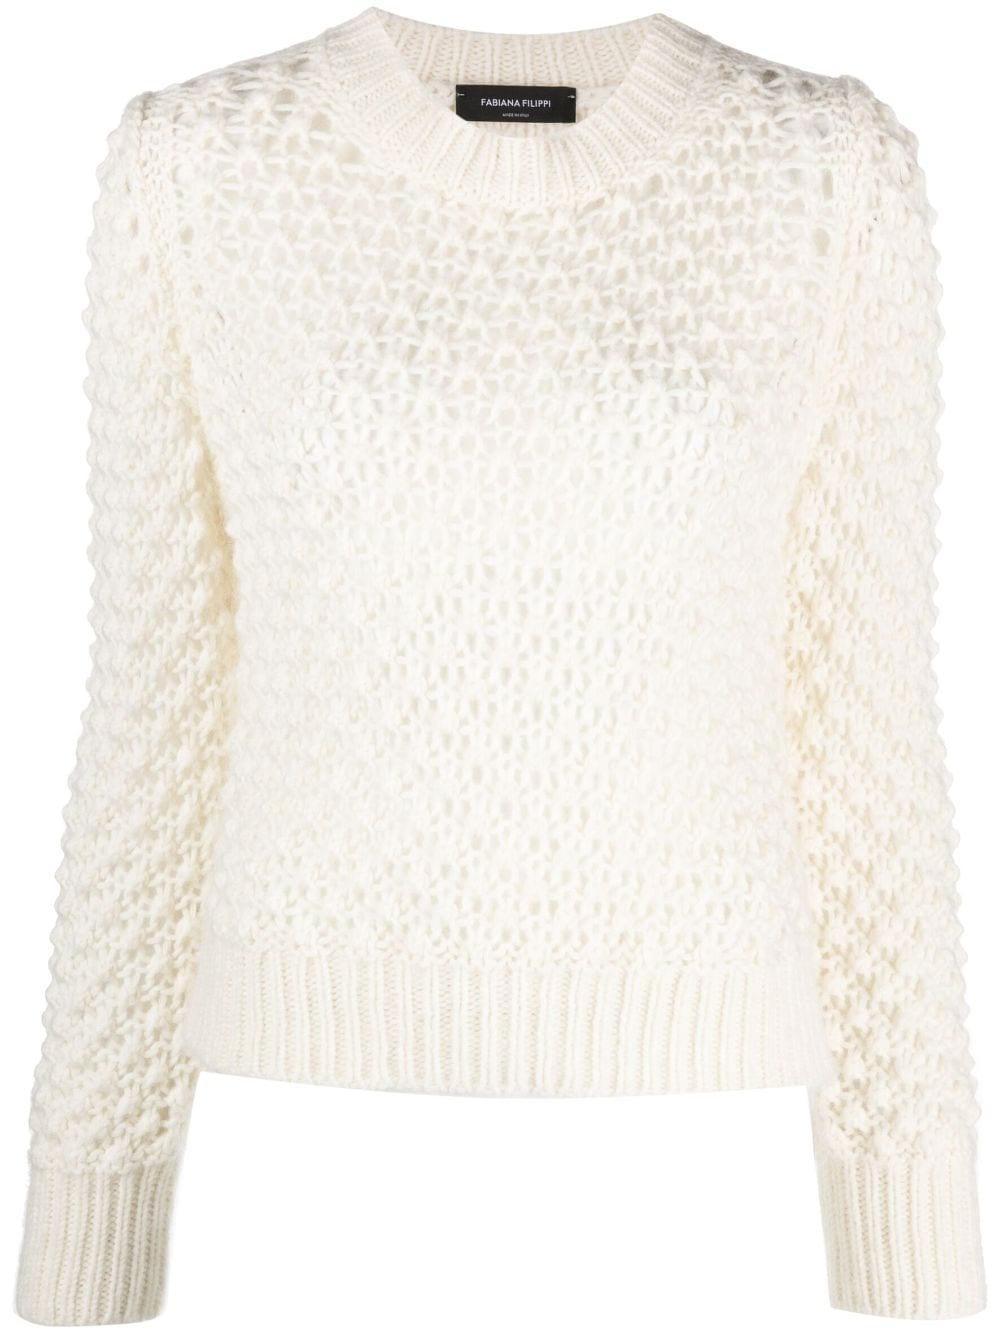 Fabiana Filippi Open-knit Long-sleeve Jumper In White